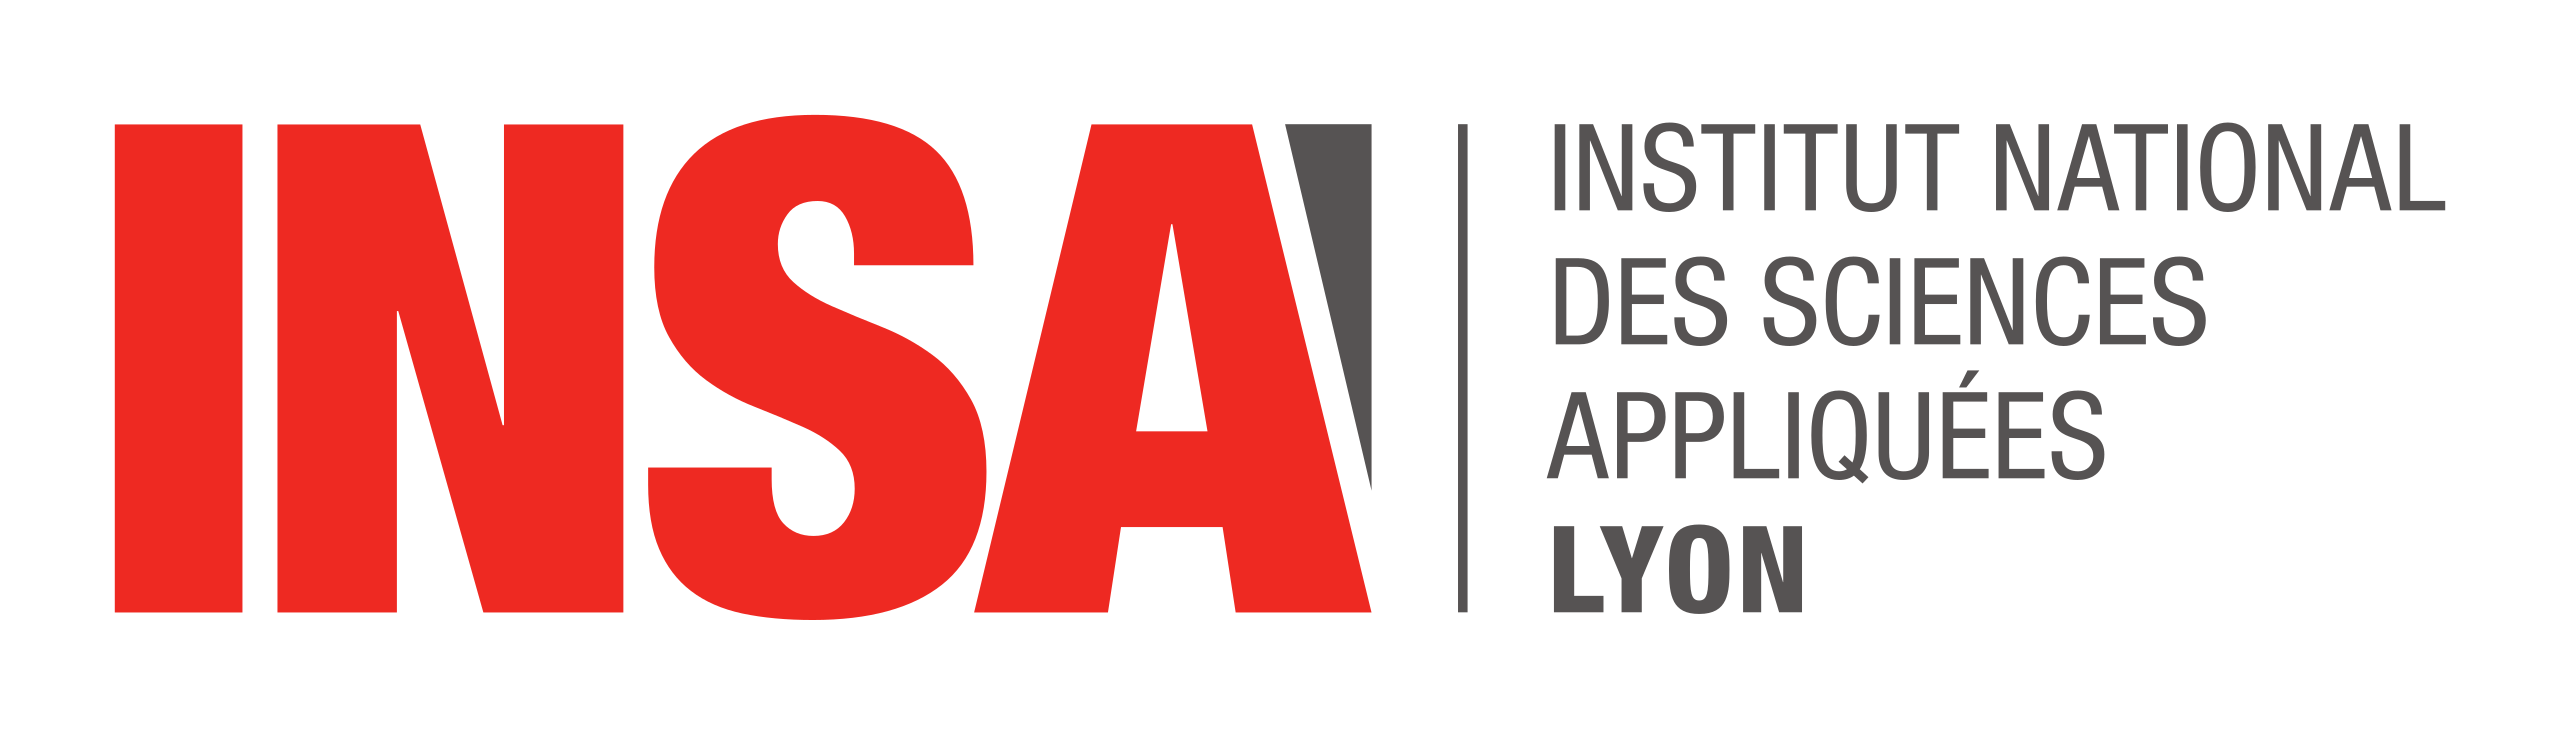 Cliquez sur le logo pour accéder au site de l'INSA Lyon